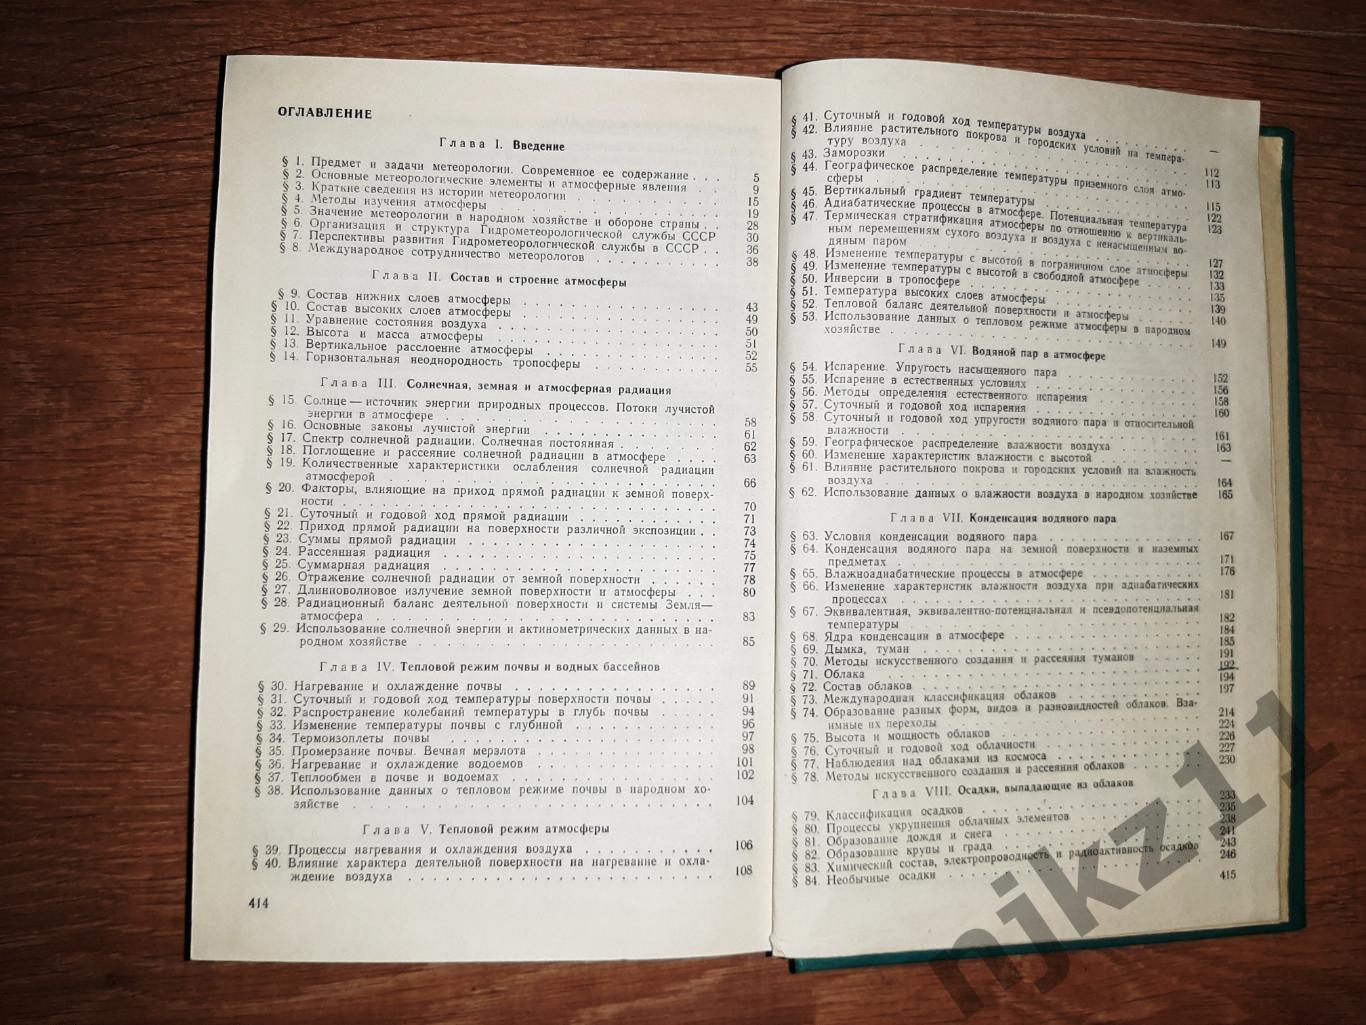 Гуральник МЕТЕОРОЛОГИЯ 1972г редкий учебник СССР 5